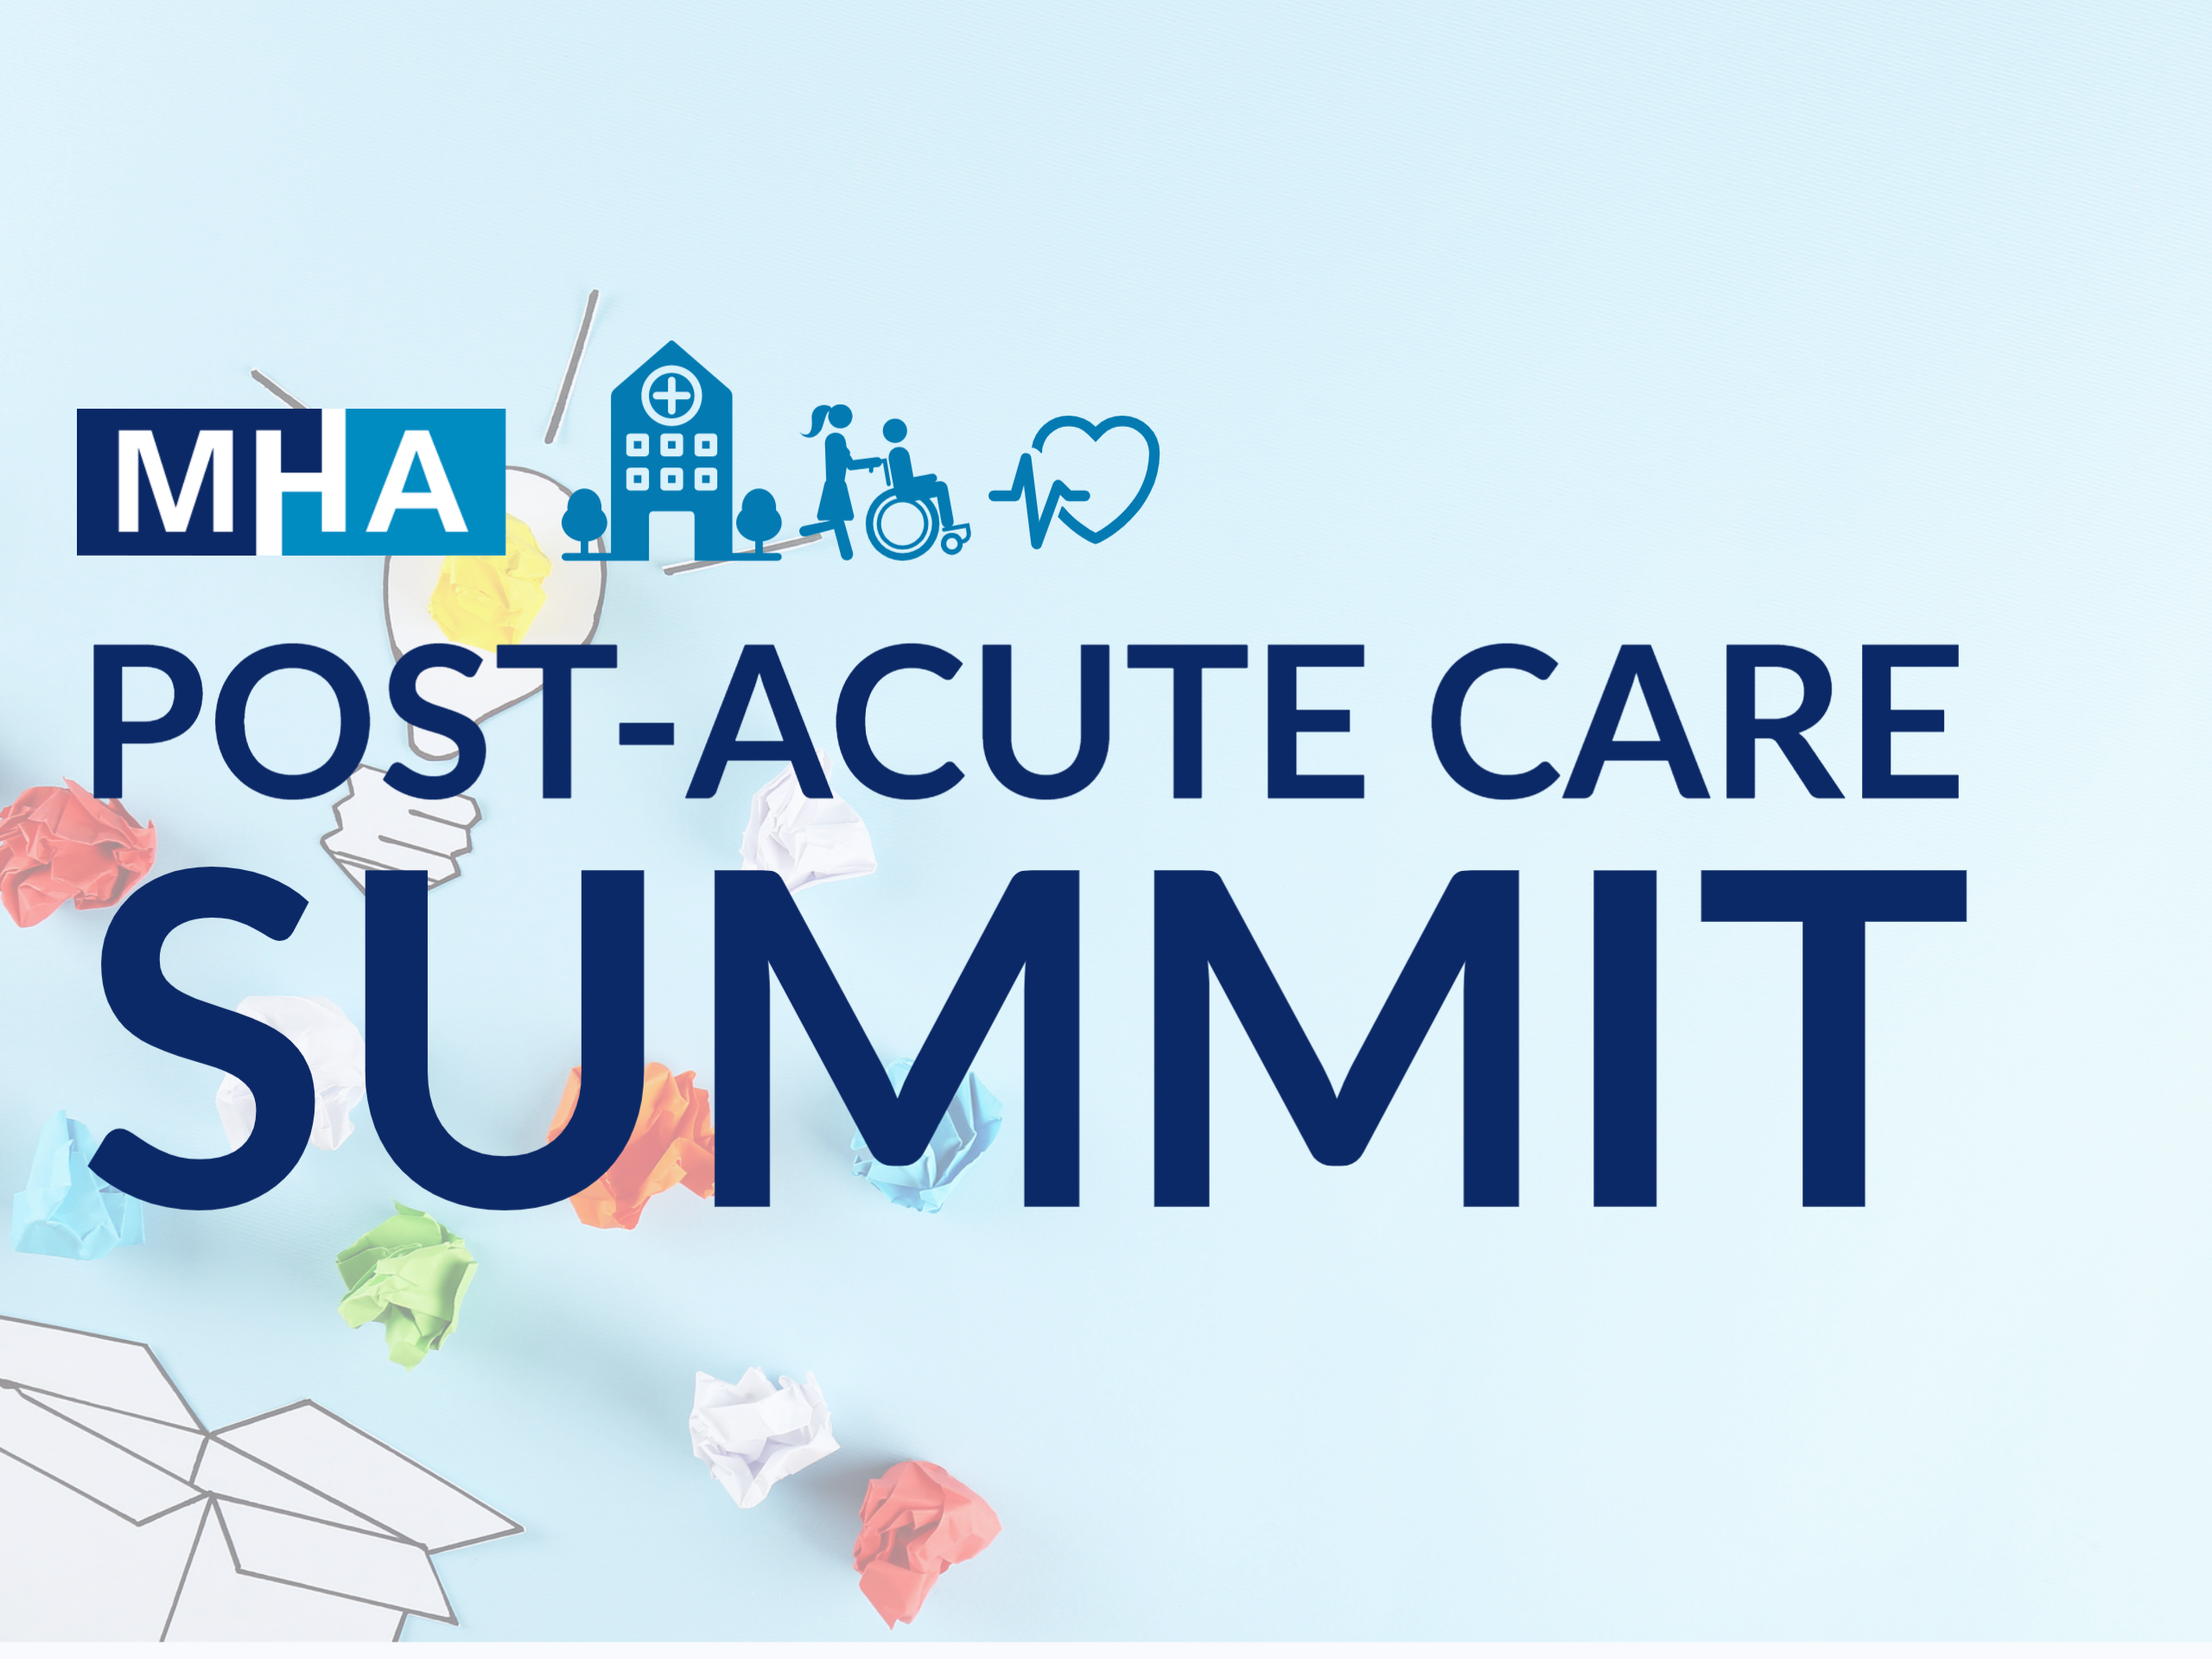 MHA Post-Acute Care Summit logo